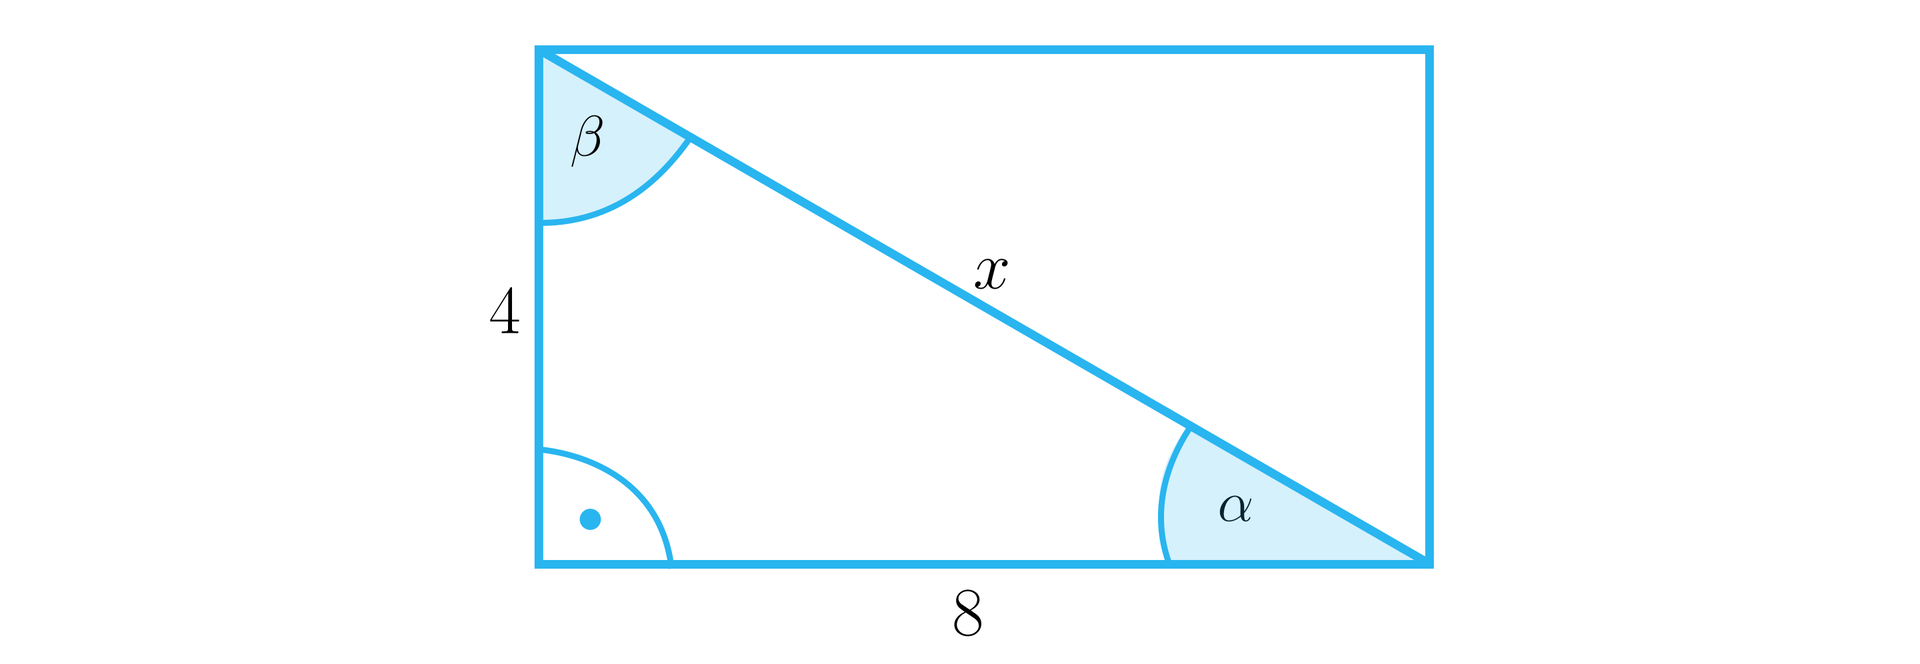 Rysunek przedstawia prostokąt, w którym poprowadzono przekątną, dzięki czemu utworzono trójkąt prostokątny o podstawie o długości 8, przeciwprostokątnej x i pionowej przyprostokątnej o długości 4. W trójkącie oznaczono kąty wewnętrzne. Kąt prosty między przyprostokątnymi o długościach 4 oraz 8, kąt α między podstawą a przeciwprostokątną oraz  kąt β między przeciwprostokątną a bokiem o długości 4 .